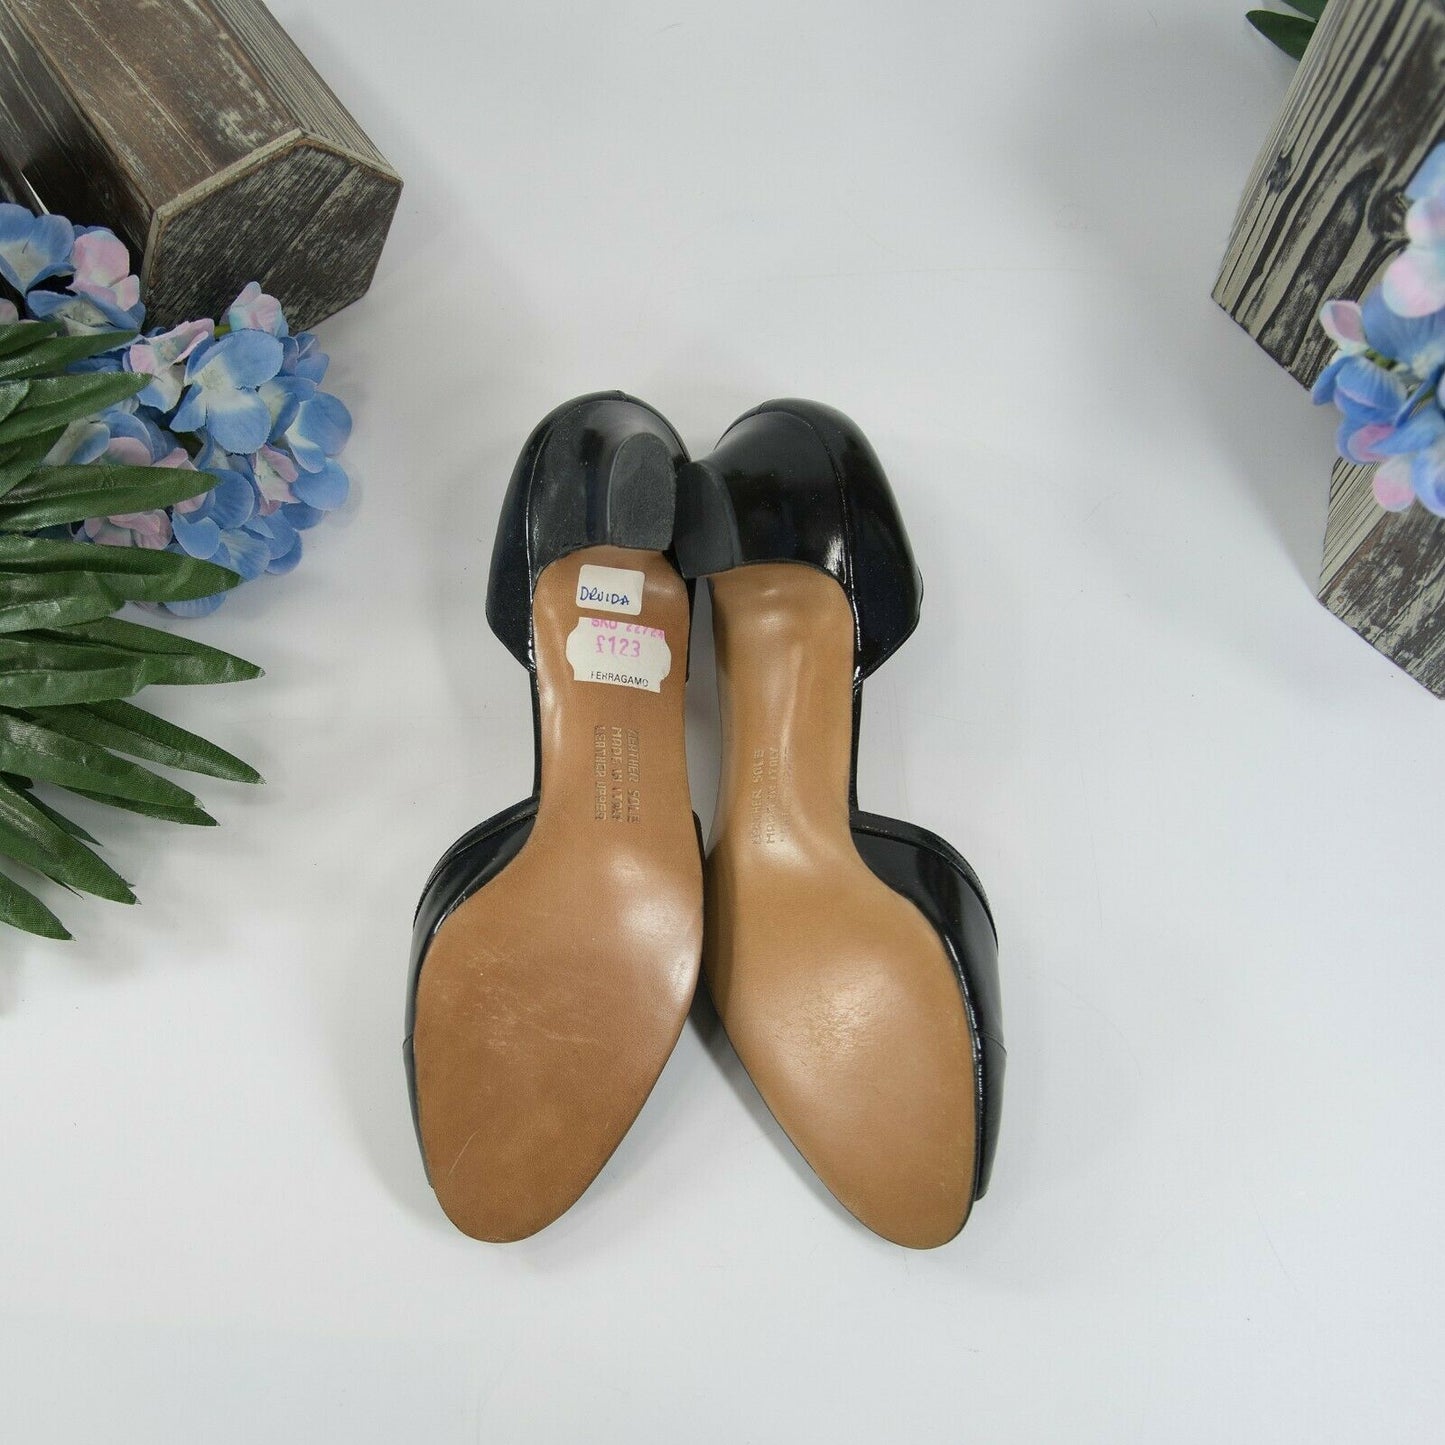 Salvatore Ferragamo Black Leather D'Orsay Shoes Heels 8 Narrow New No Box